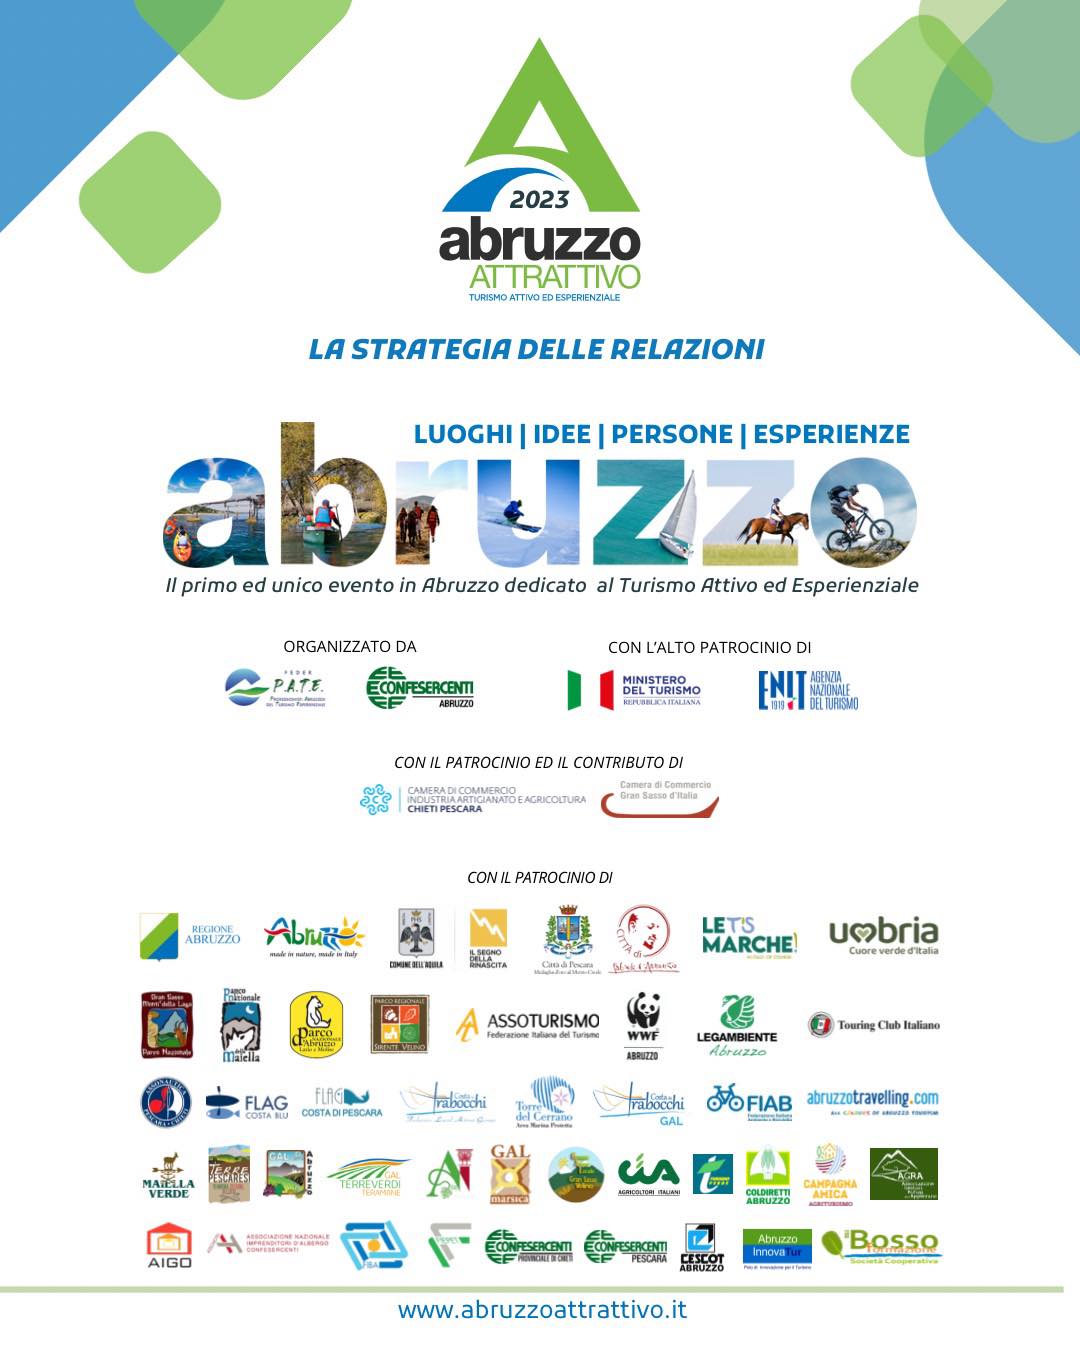 Abruzzo attrattivo 2023